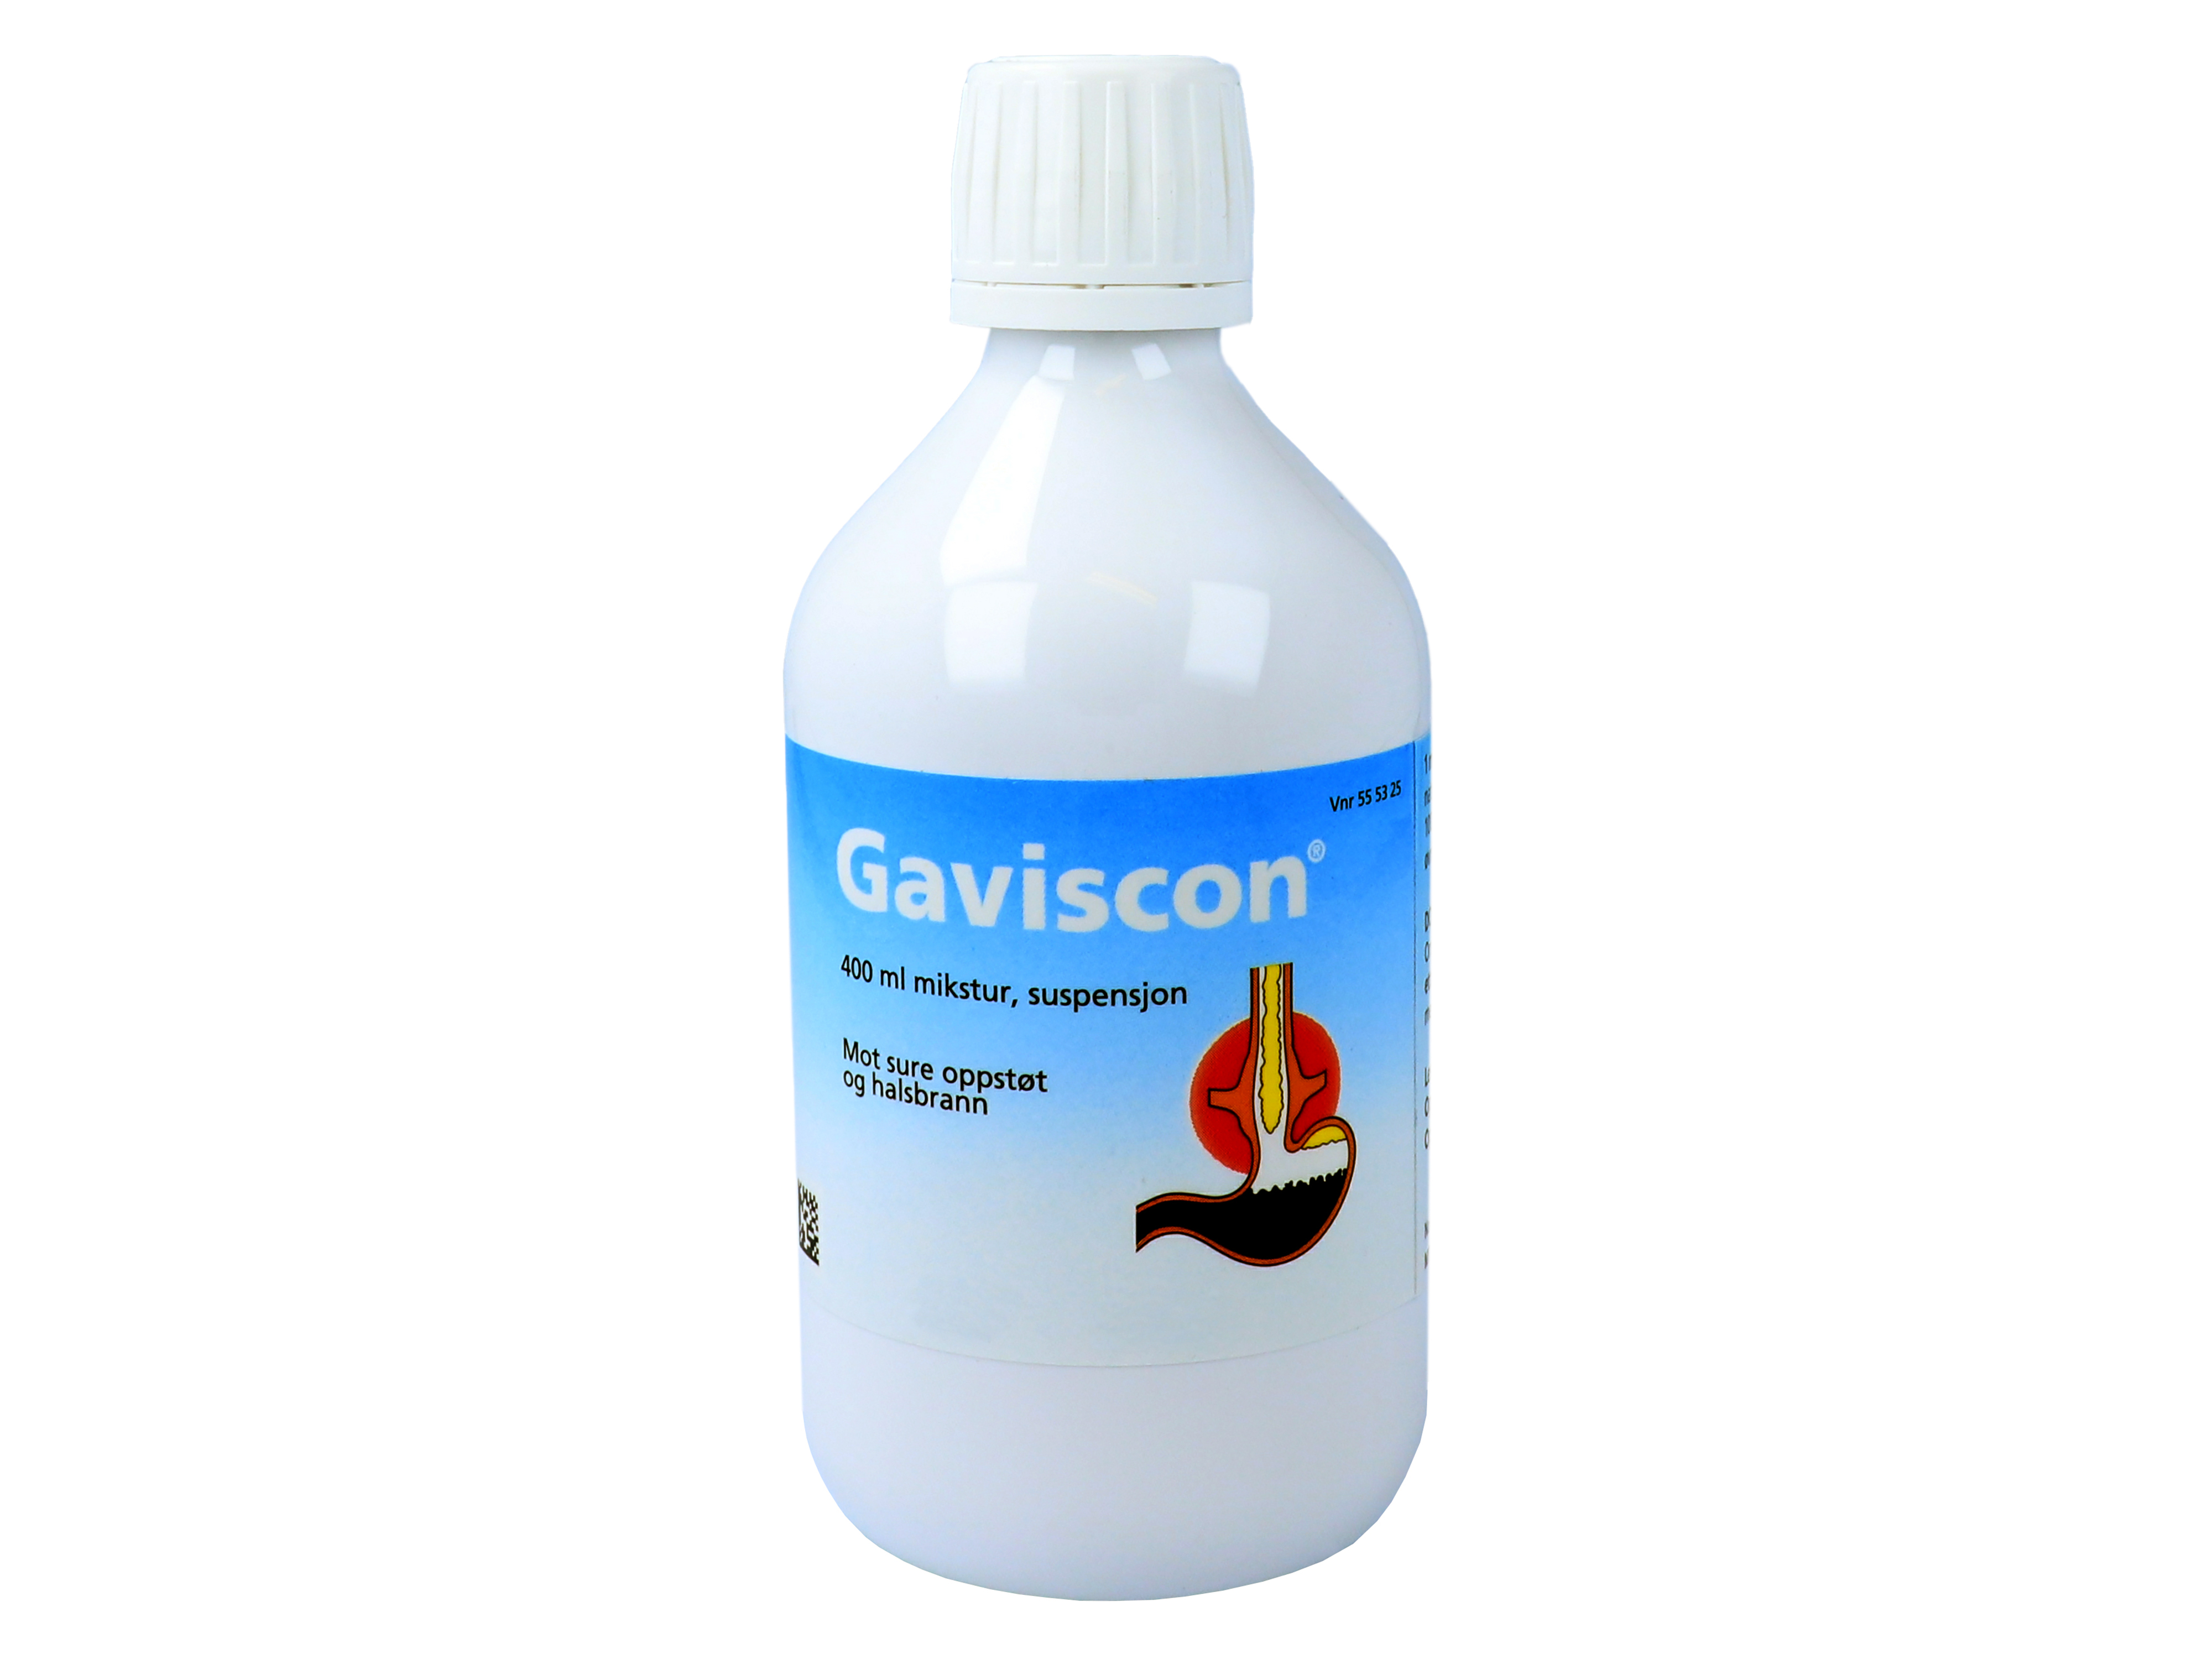 Gaviscon Mikstur, 400 ml